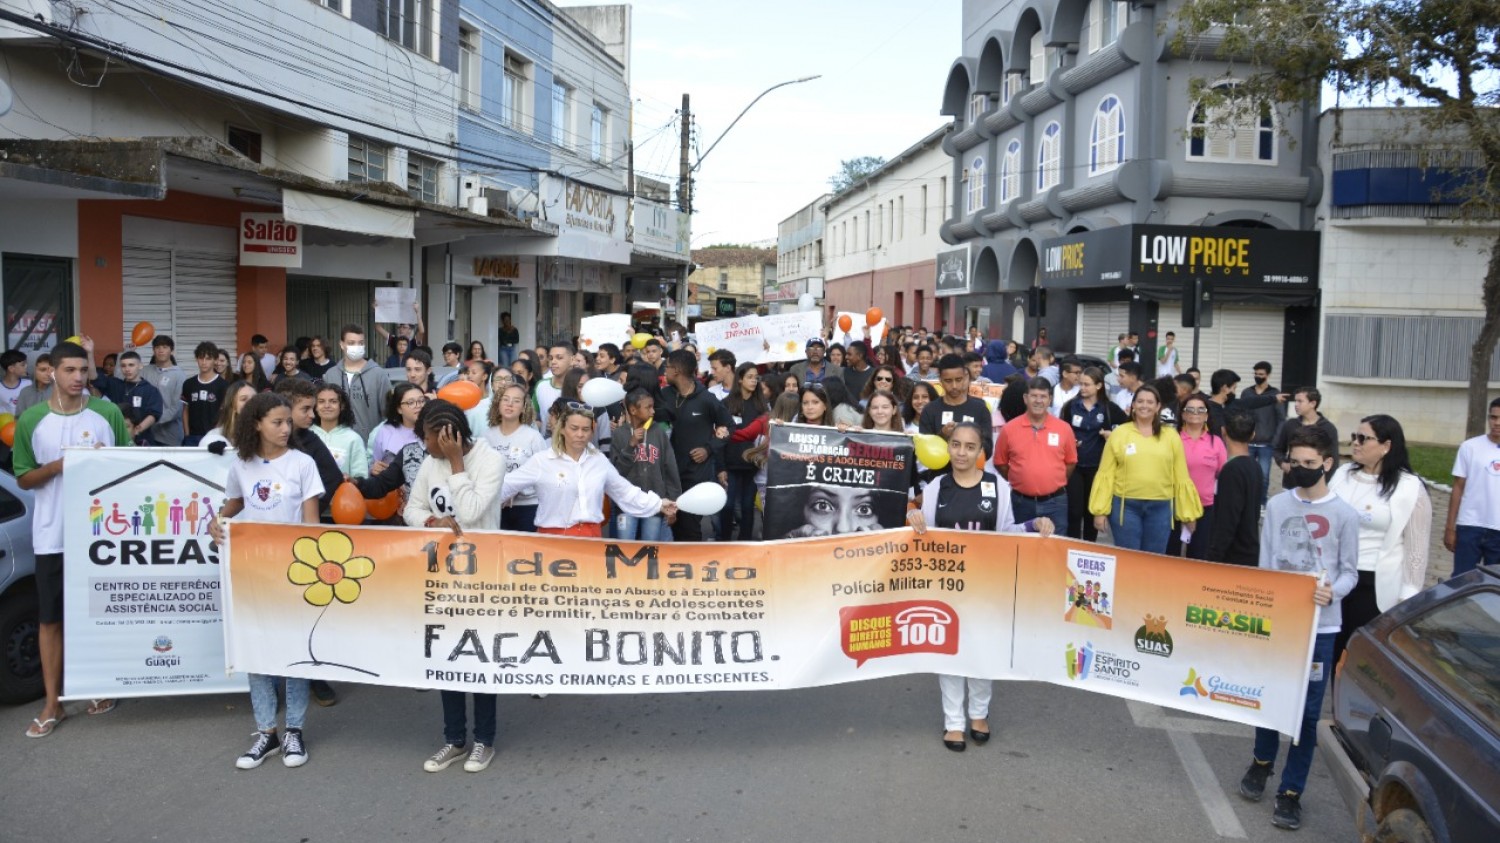 "FAÇA BONITO" - PREFEITURA PROMOVE AÇÕES DE COMBATE À VIOLÊNCIA SEXUAL CONTRA CRIANÇAS E ADOLESCENTES